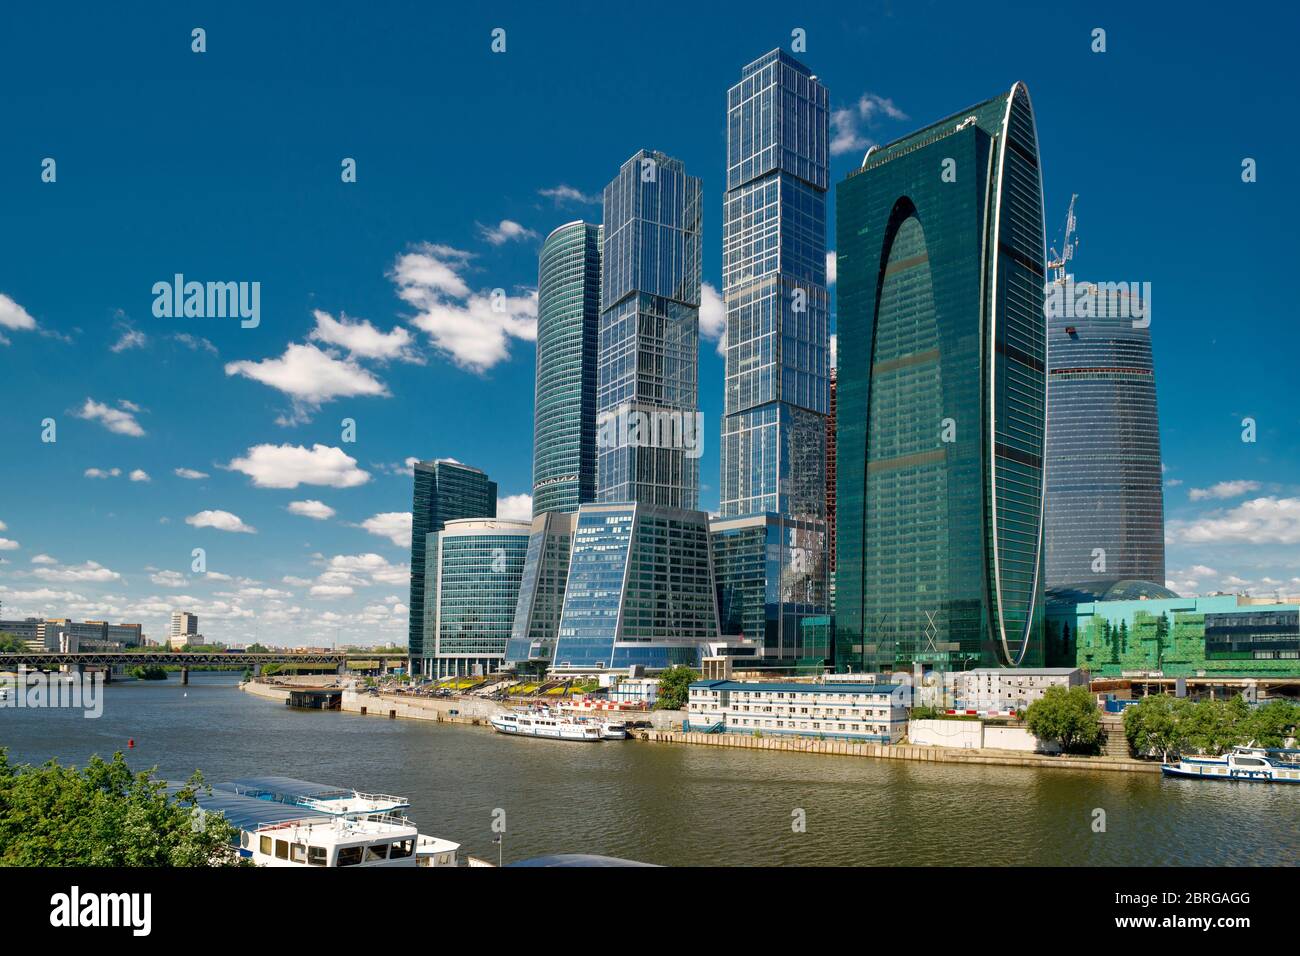 Grattacieli della città di Mosca sul fiume Moskva, Russia. Mosca-City è un moderno quartiere degli affari e punto di riferimento di Mosca. Panorama panoramico di urb contemporaneo Foto Stock